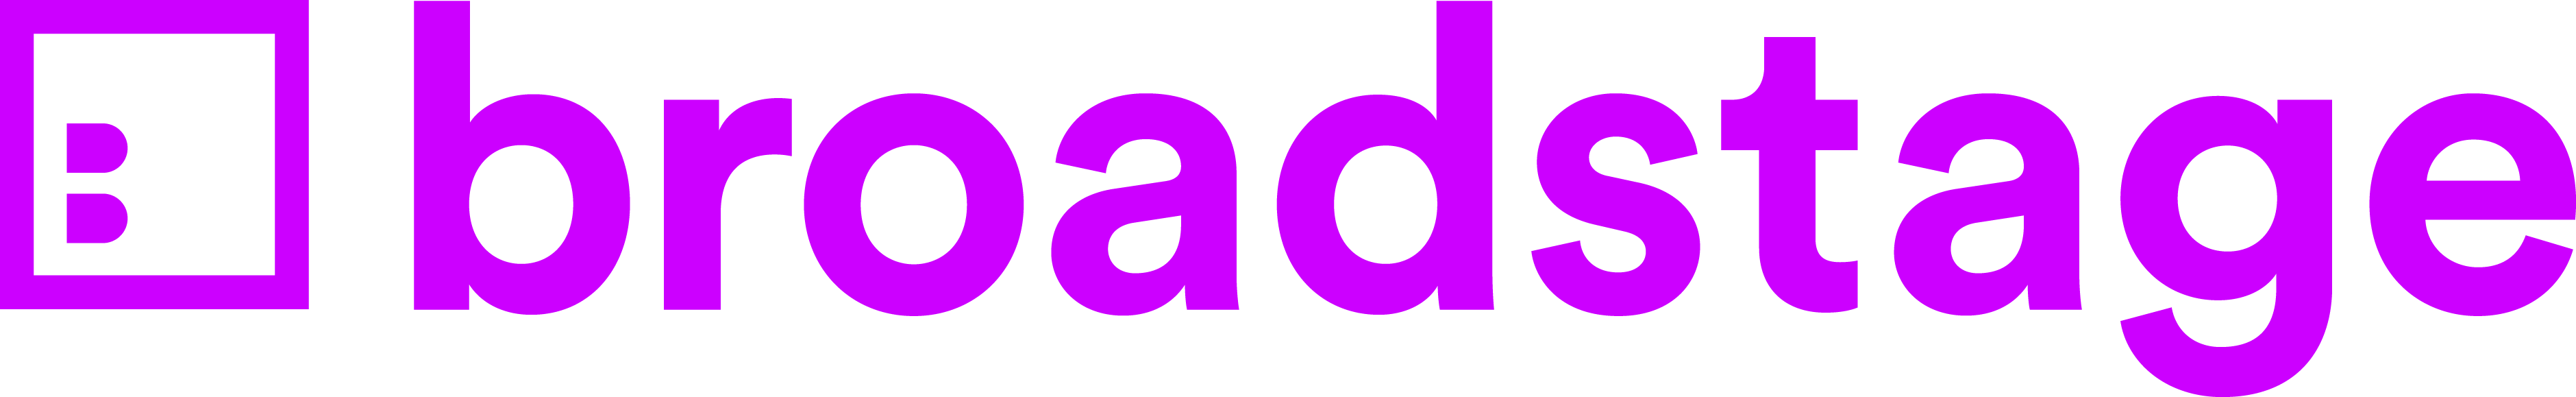 Purple broadstage logo